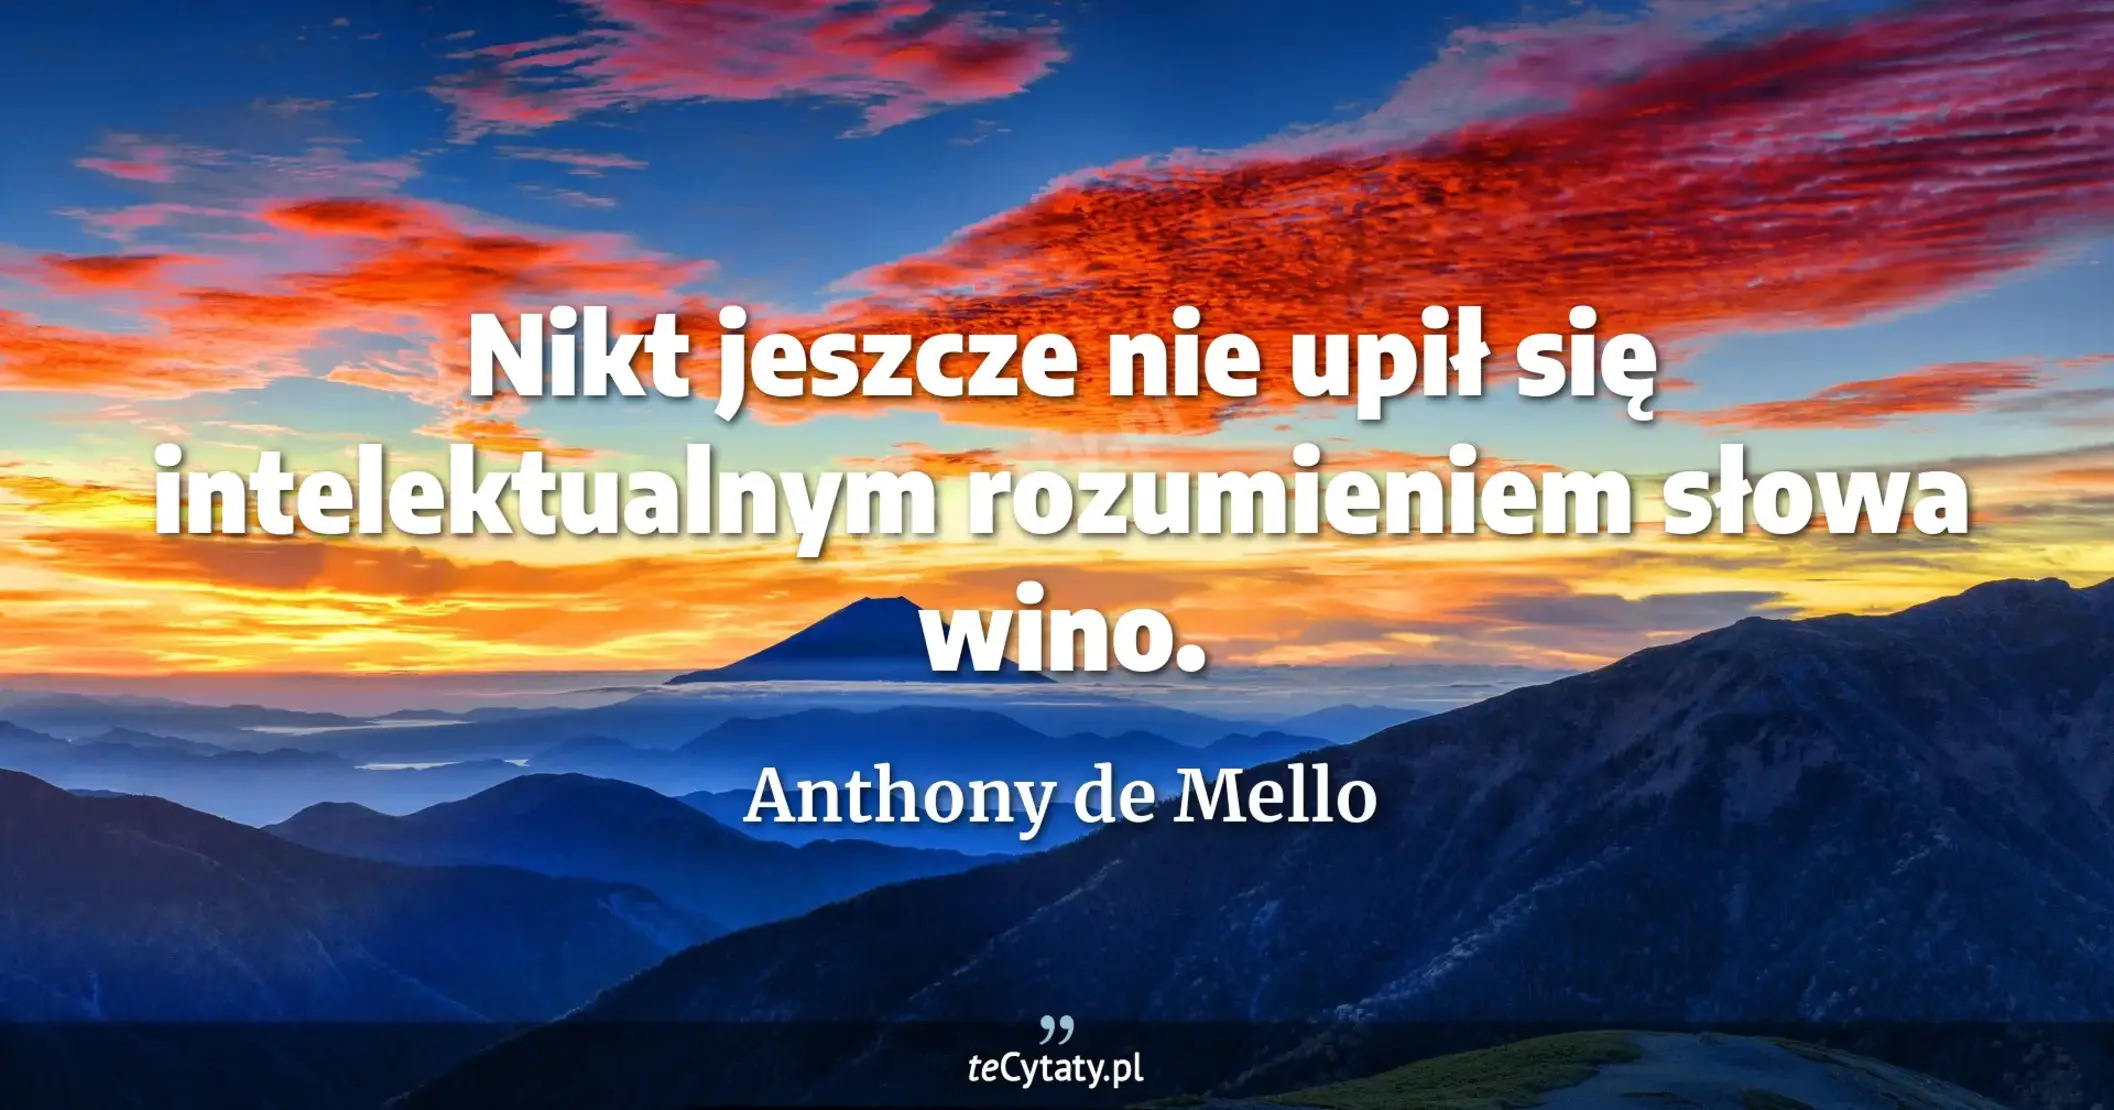 Nikt jeszcze nie upił się intelektualnym rozumieniem słowa wino. - Anthony de Mello